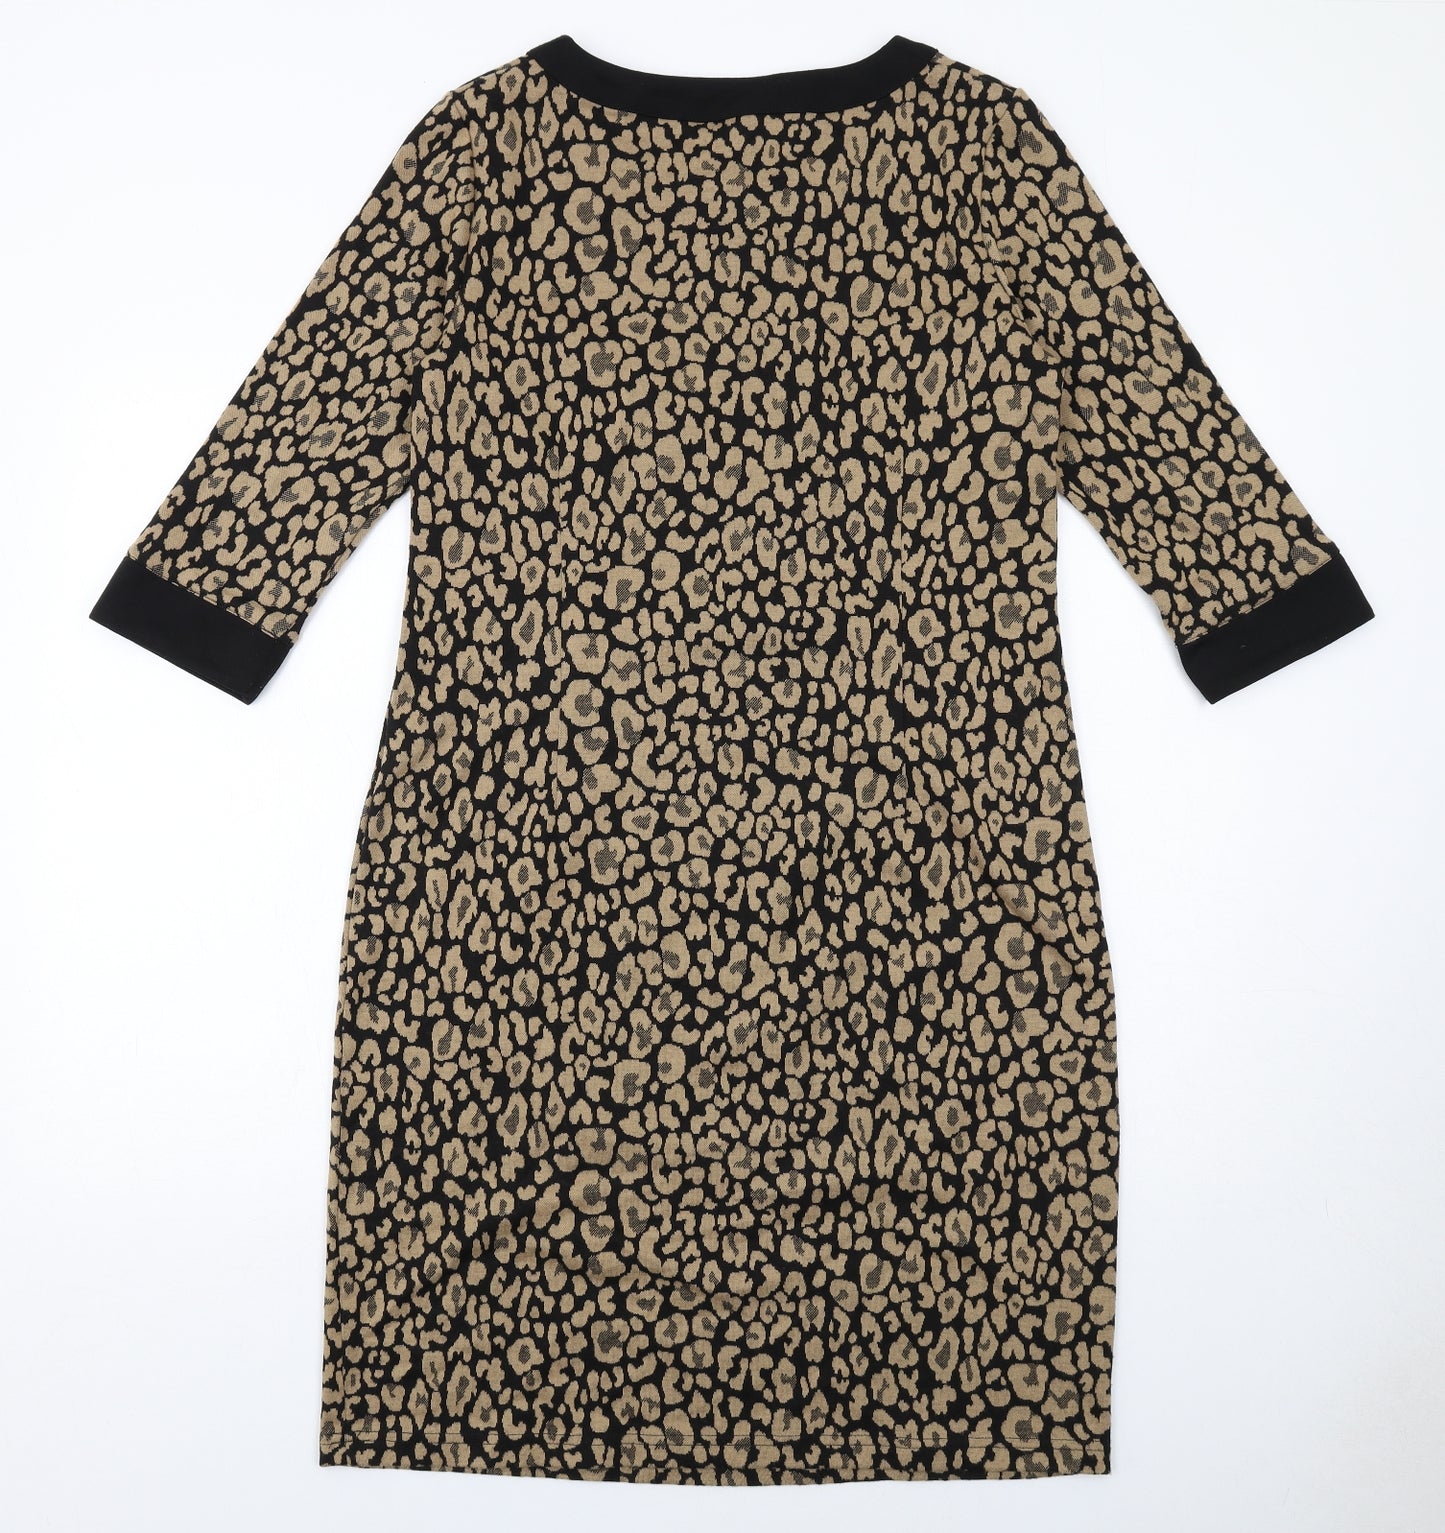 Damart Womens Beige Animal Print Polyester Jumper Dress Size 14 Round Neck Pullover - Leopard pattern